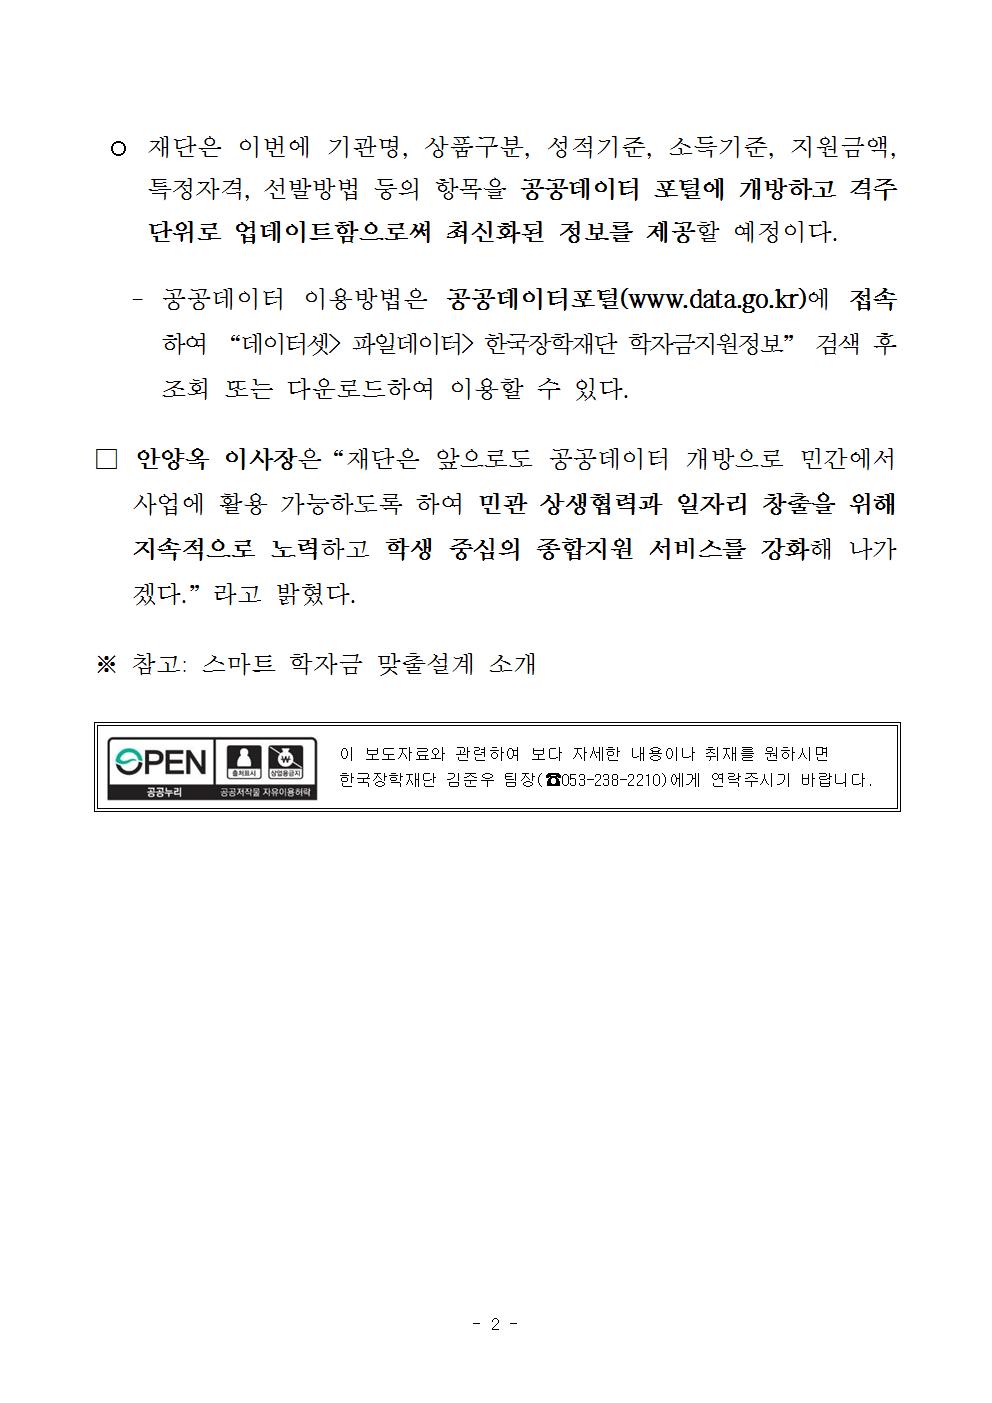 02-02(금)[보도자료] 한국장학재단, 학자금 분야 공공데이터 개방002.jpg